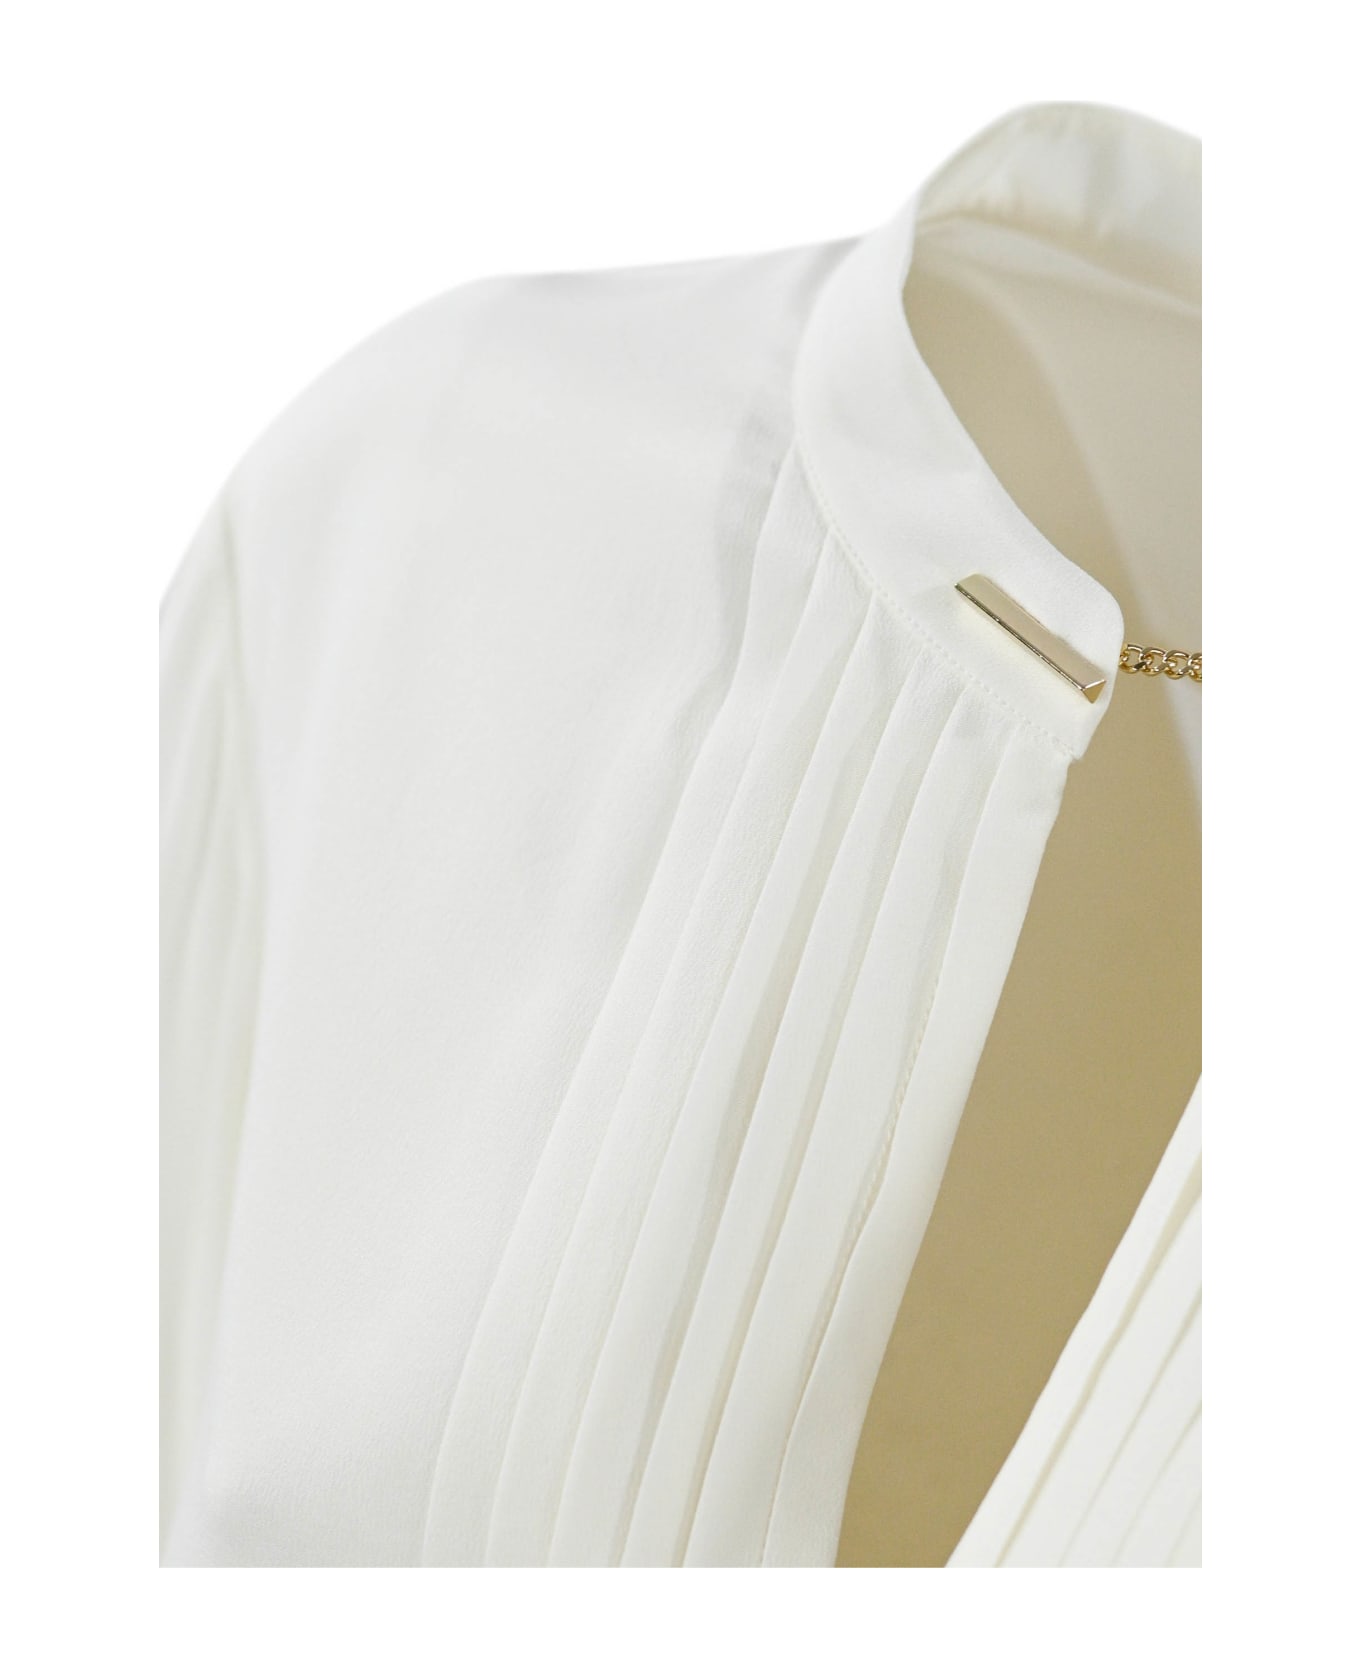 Max Mara Studio Shirt With Ribs And Cufflinks - White ブラウス